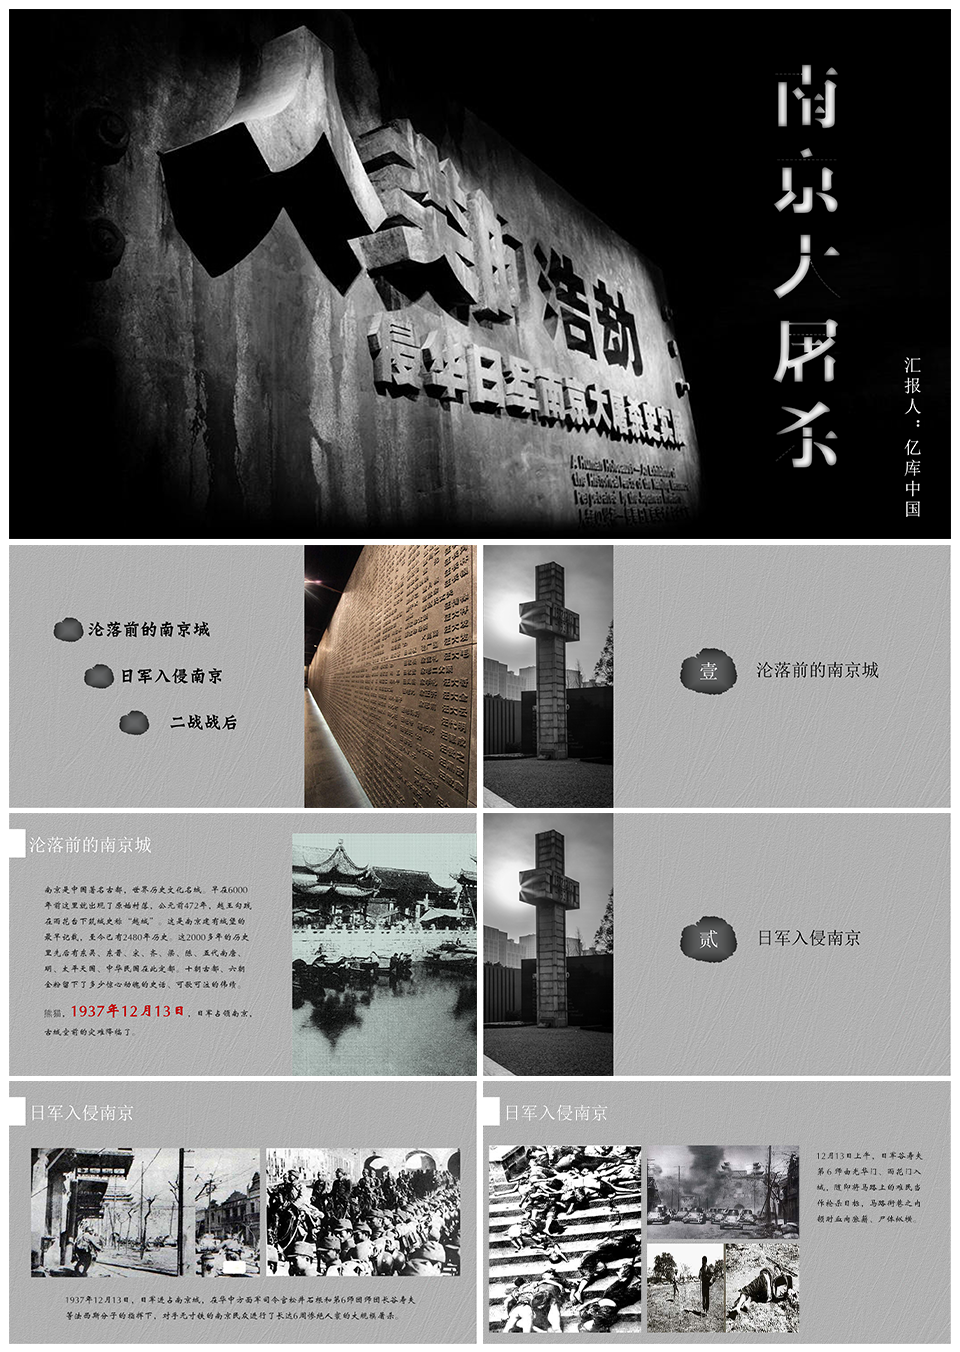 国家公祭日南京大屠杀PPT模板